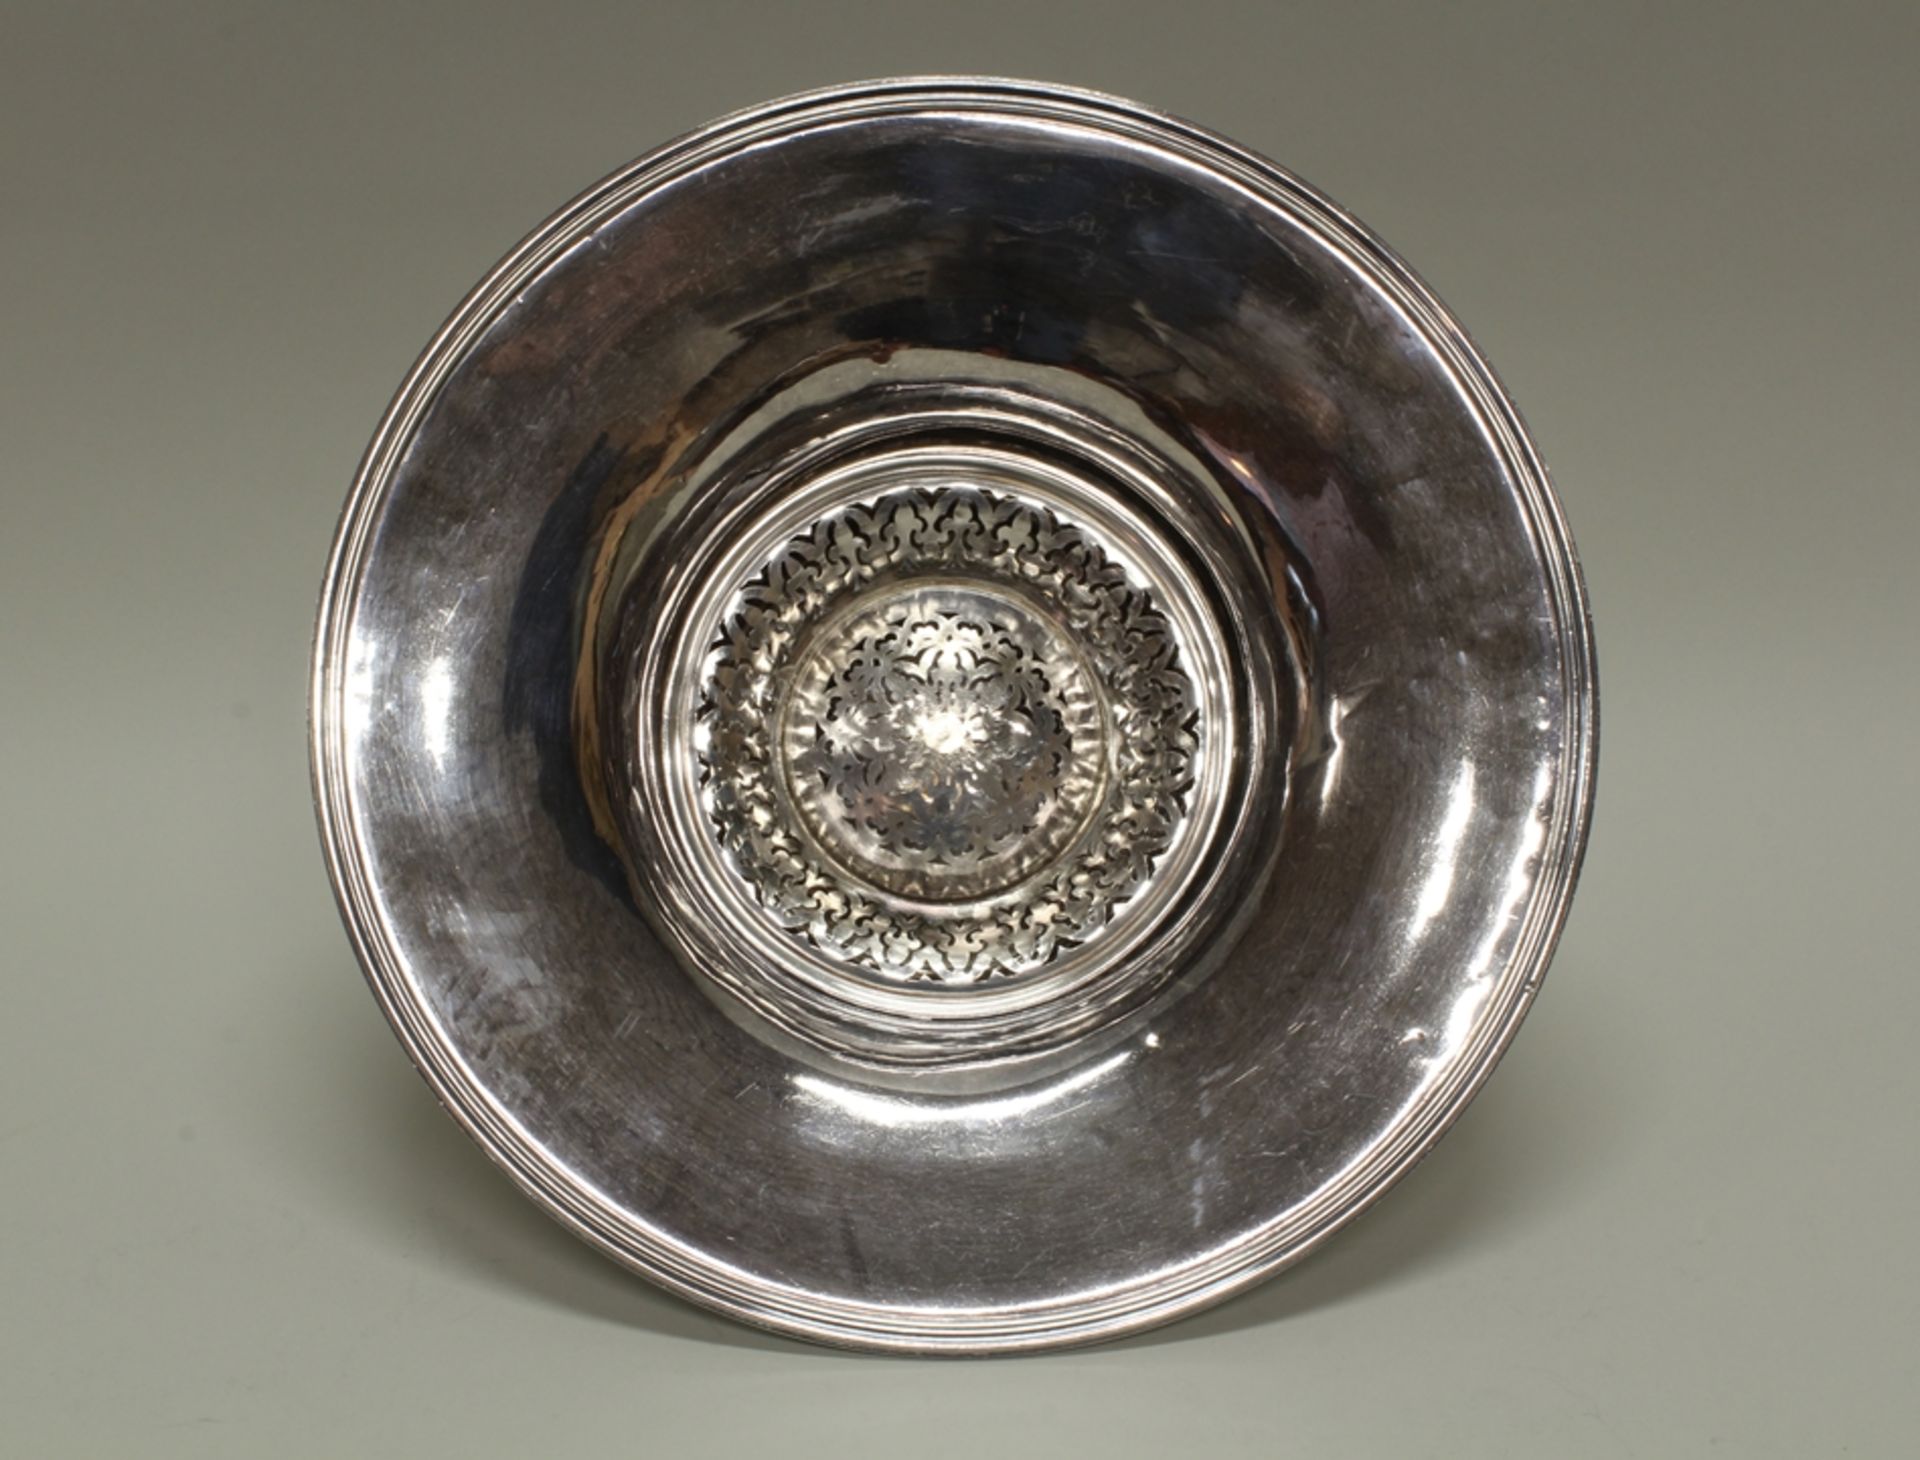 Blumenschale, Silber 950, Frankreich, 1840-1879, Exportmarke, Meistermarke PQ, ausladende Mündung, 